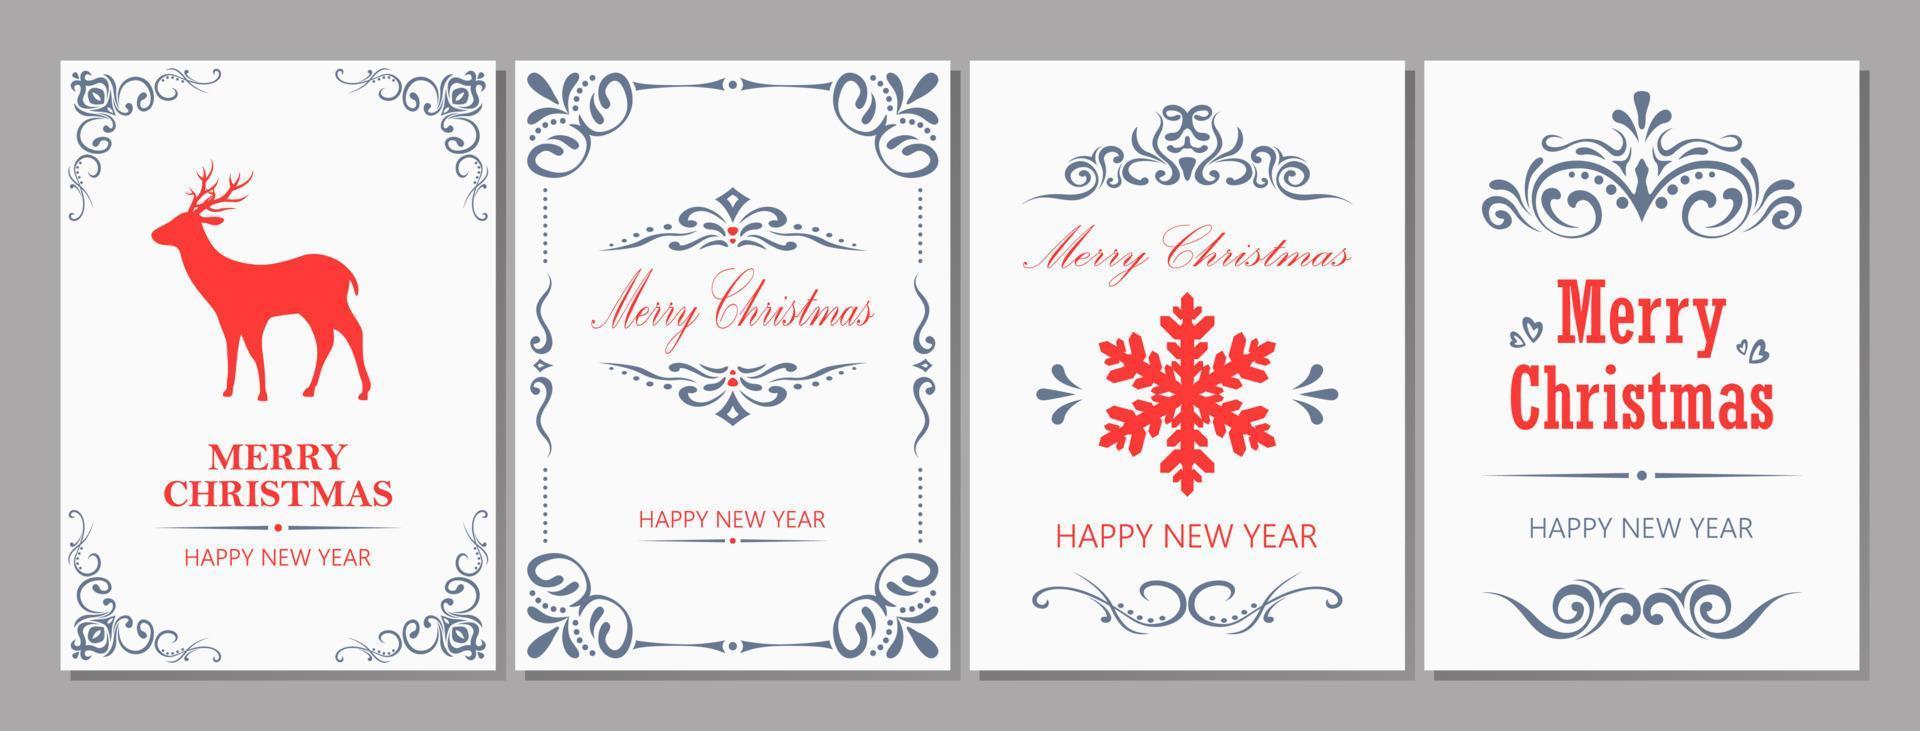 cartão de feliz natal e ano novo vetor